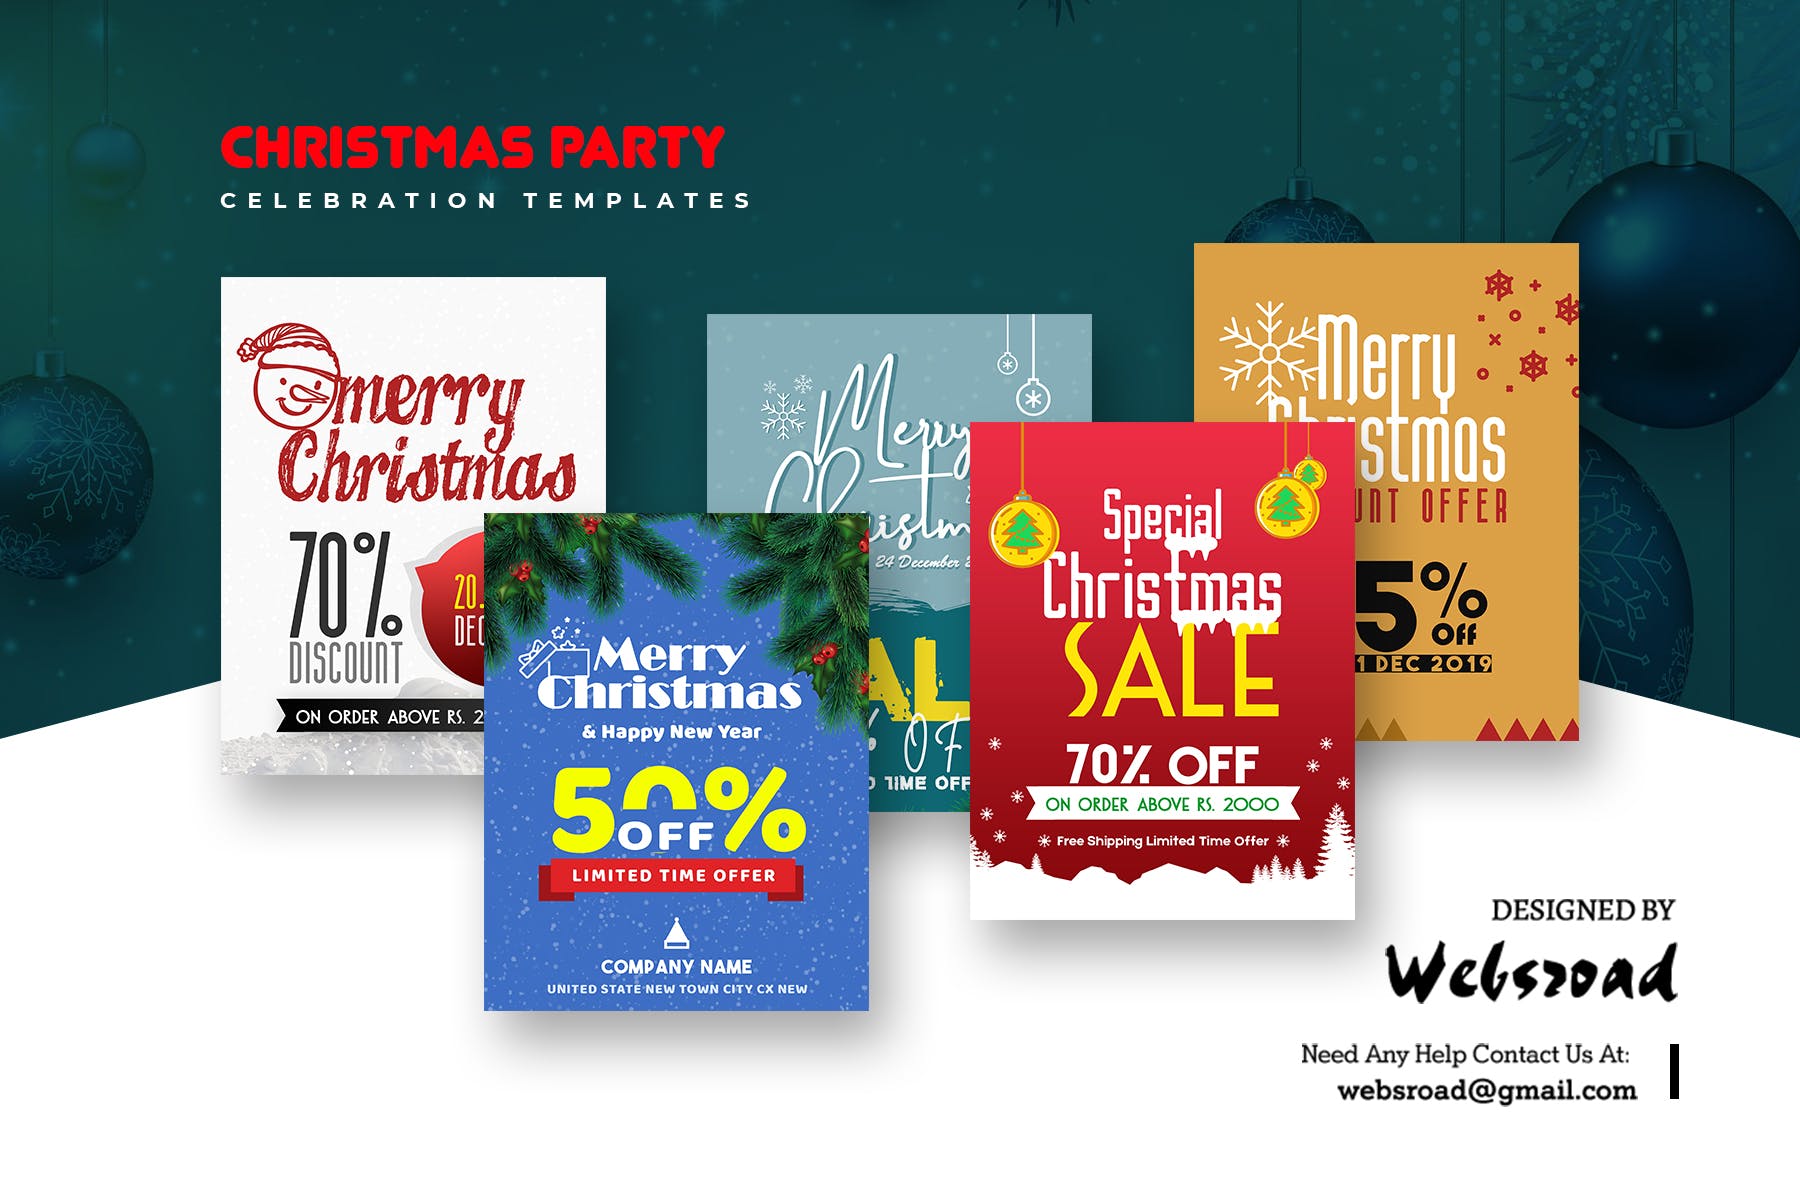 圣诞节主题促销活动素材中国精选广告模板合集 Christmas Party Celebration Templates插图